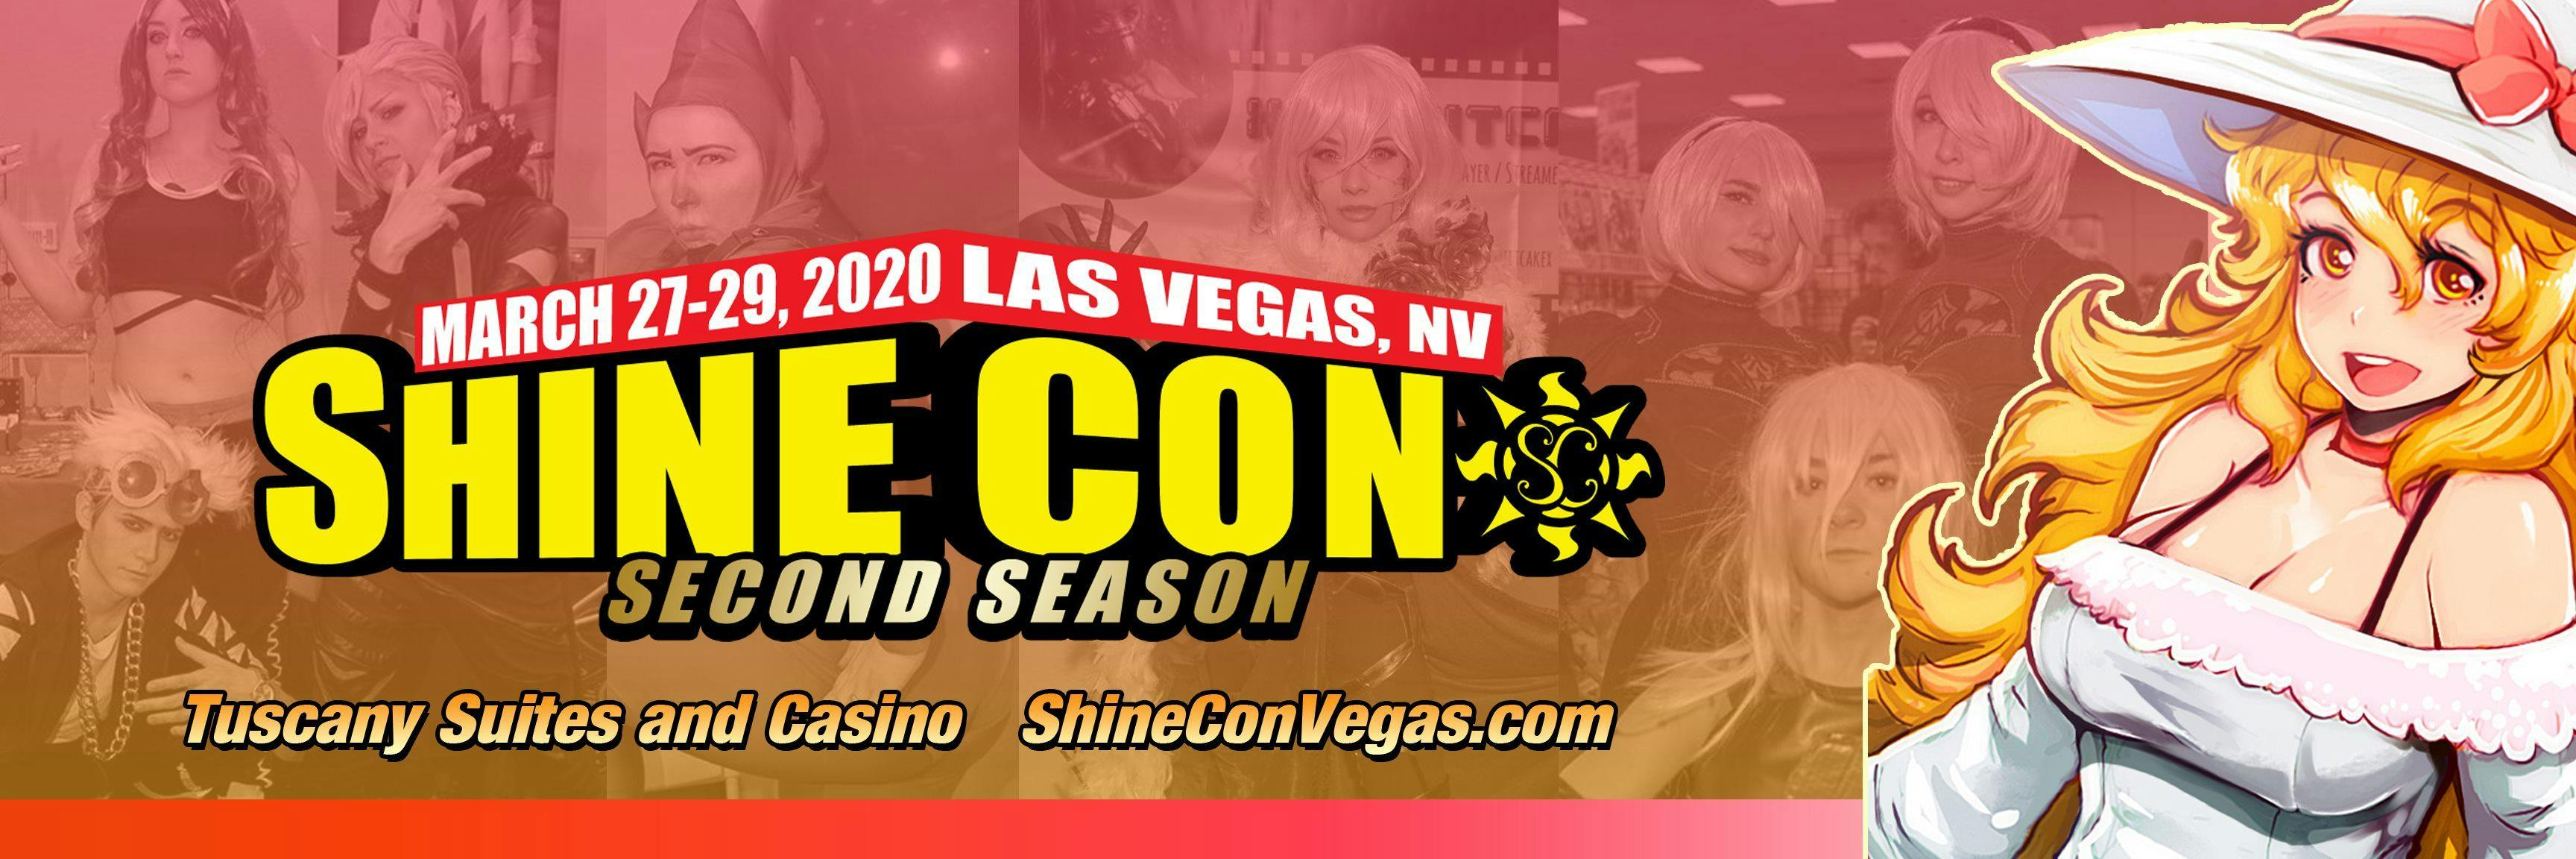 Shine Con 2020 Pre-Registration